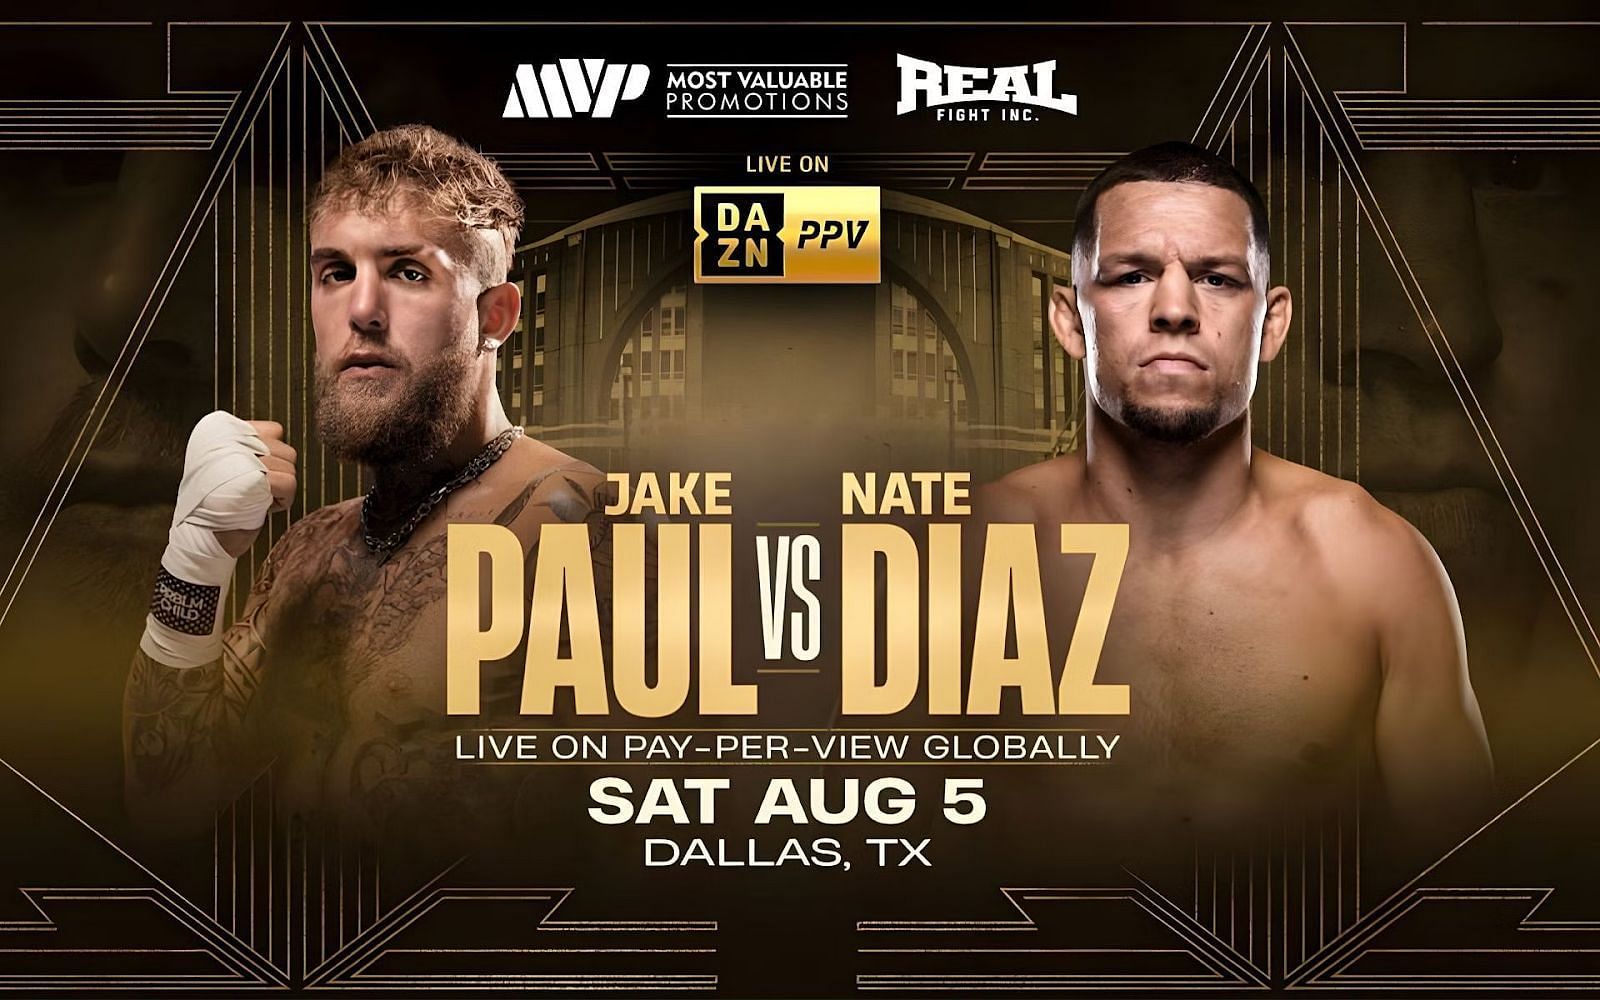 Jake Paul vs. Nate Diaz fight poster [Image Courtesy: DAZN]